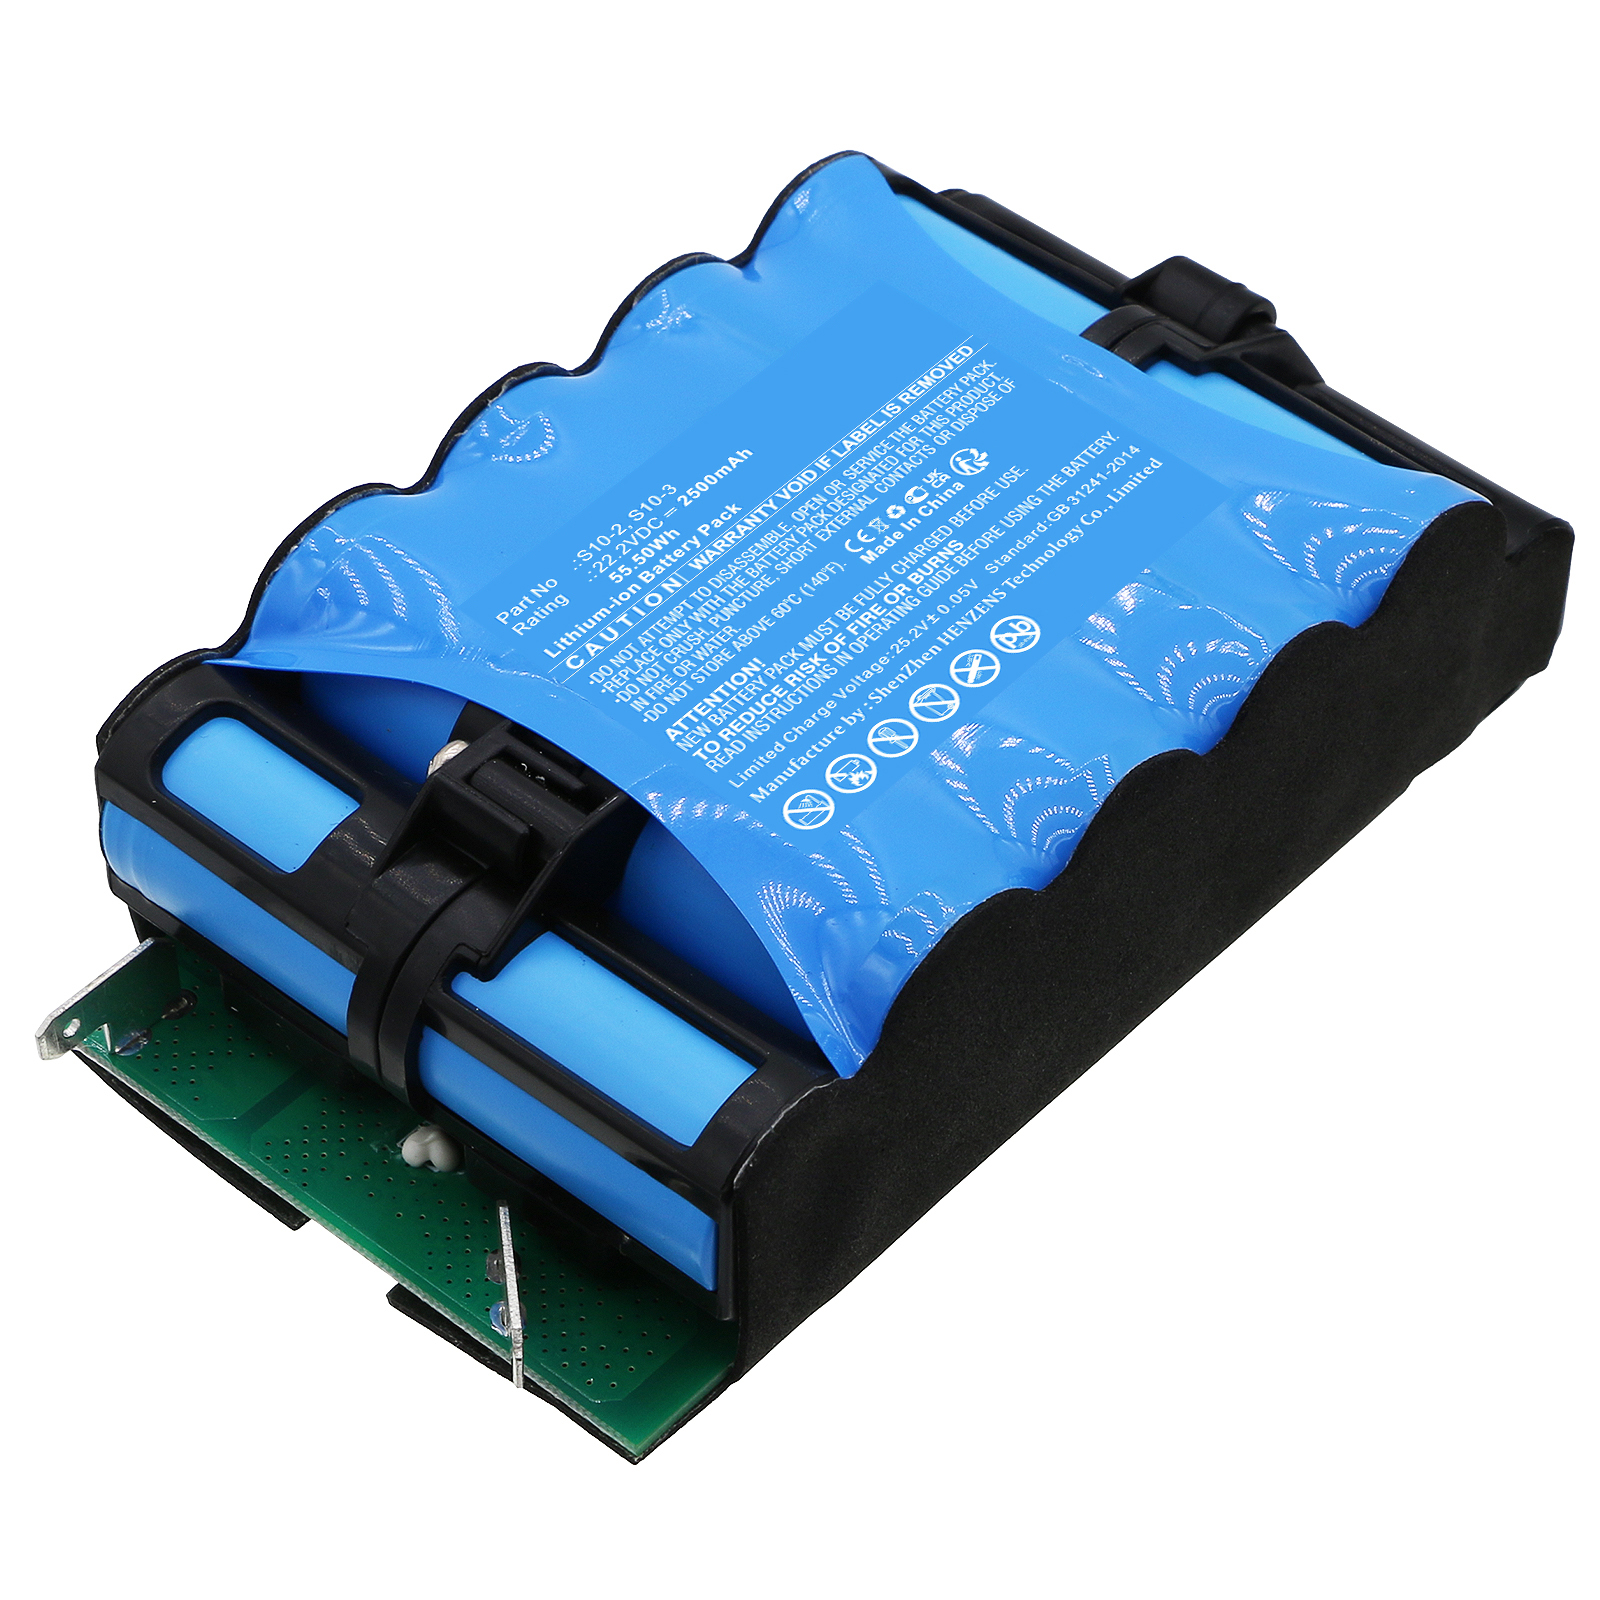 Synergy Digital Vacuum Cleaner Battery, Compatible with Tineco S10-2, S10-3 Vacuum Cleaner Battery (Li-ion, 22.2V, 2500mAh)